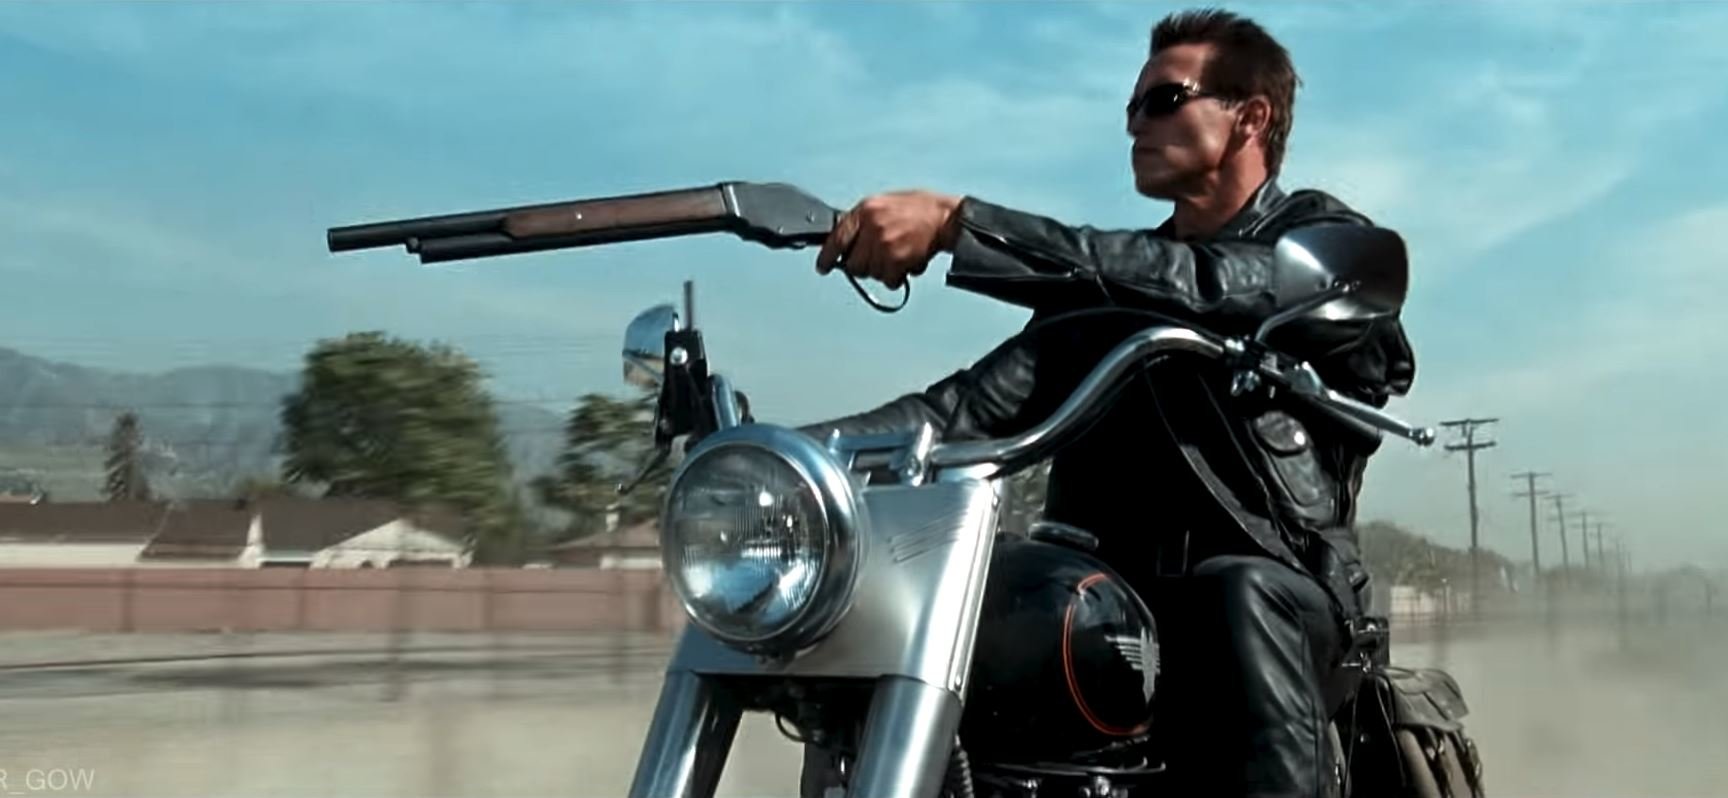 Arnold Schwarzenegger na stroji Harley-Davidson FLSTF Fat Boy během natáčení filmu Terminátor 2: Den zúčtování